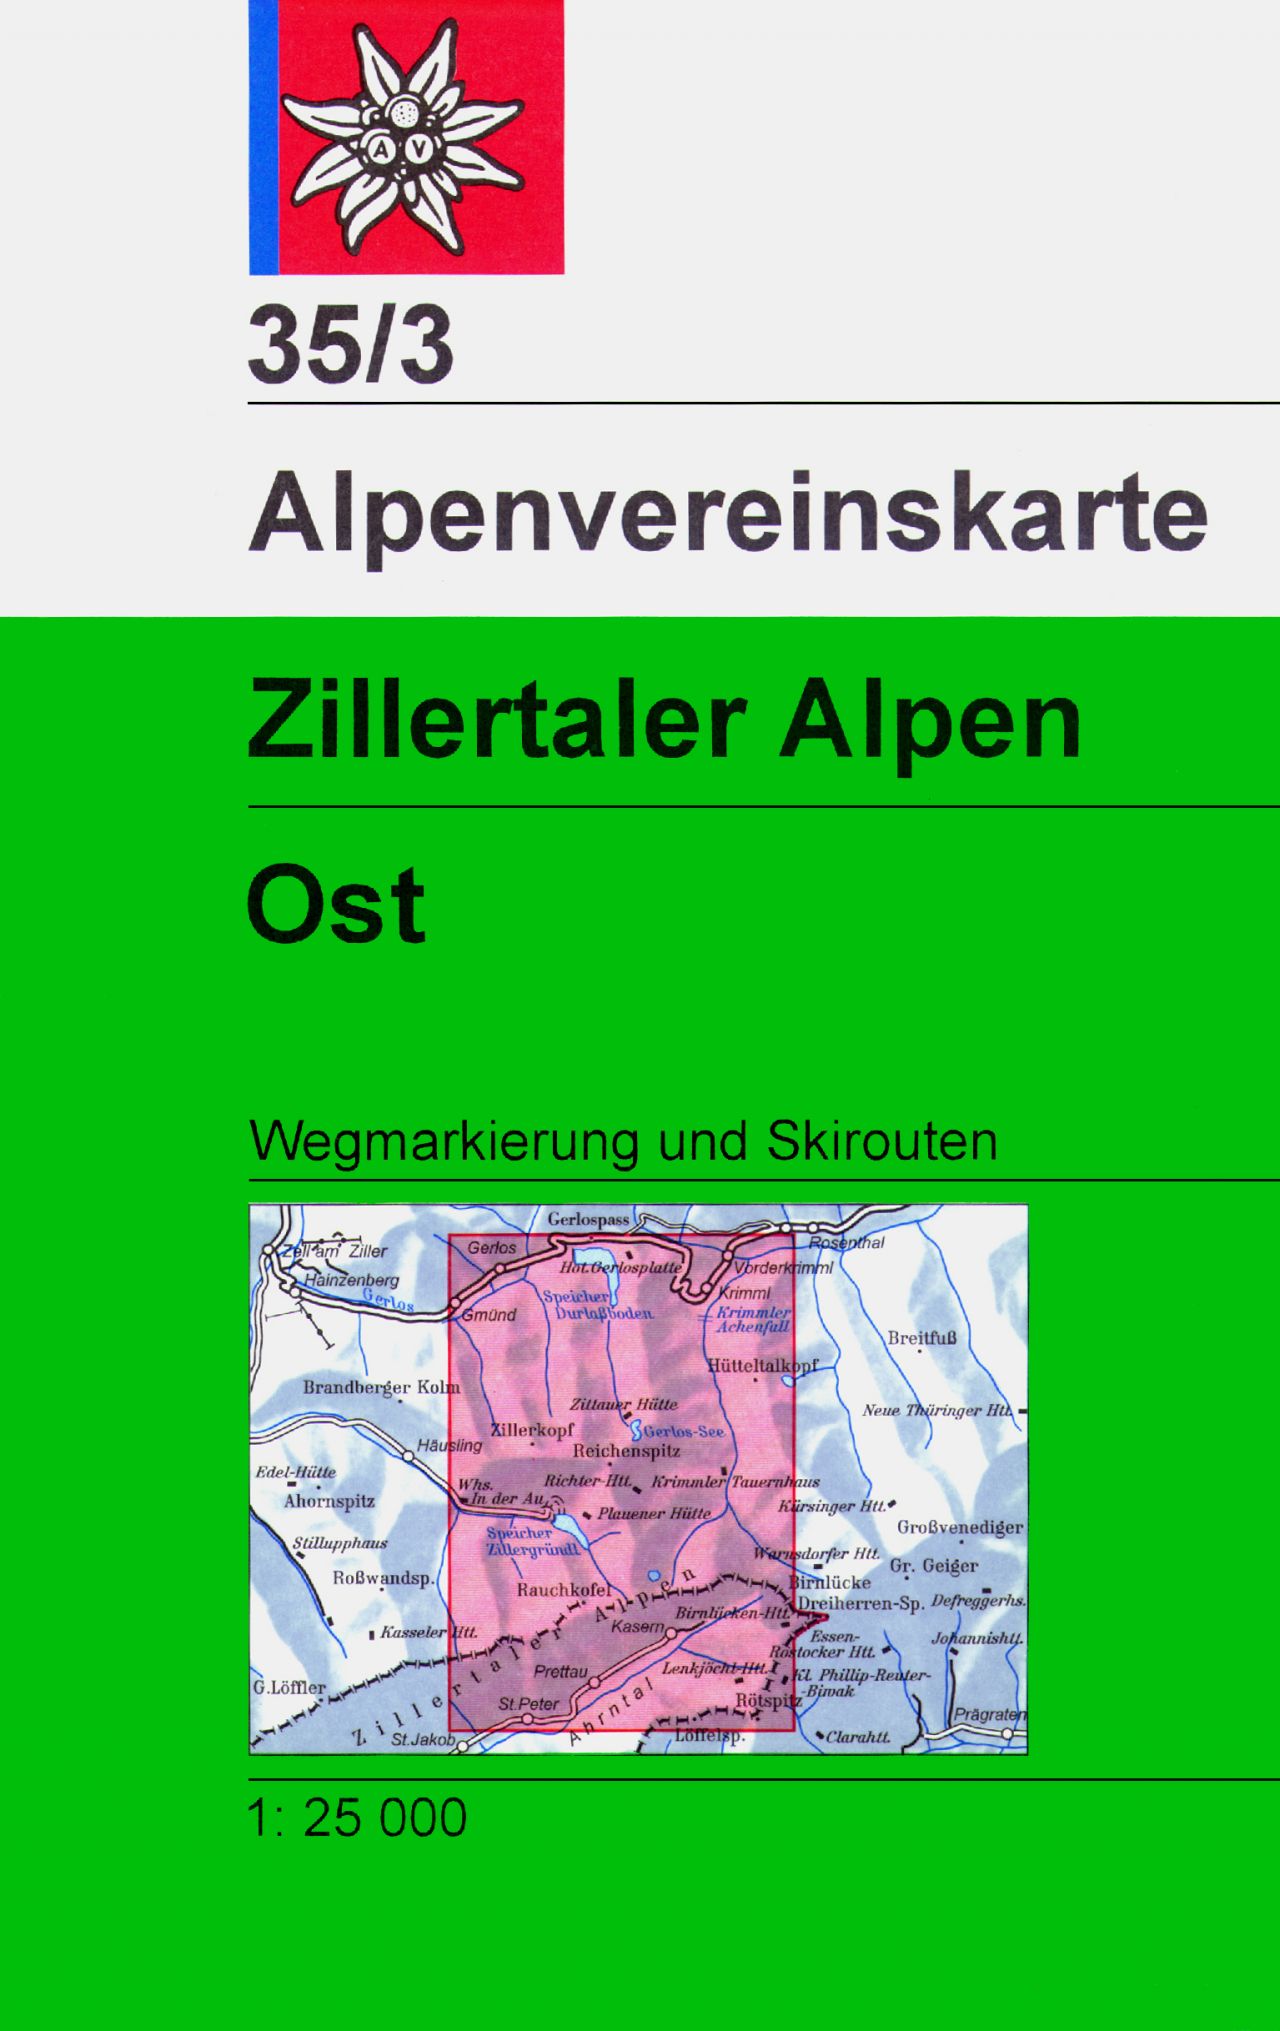 Alpenverein wandelkaart AV-35/3 Zillertaler Alpen/Ost 1:25.000 [2018] 9783928777858  AlpenVerein Alpenvereinskarten  Wandelkaarten Tirol